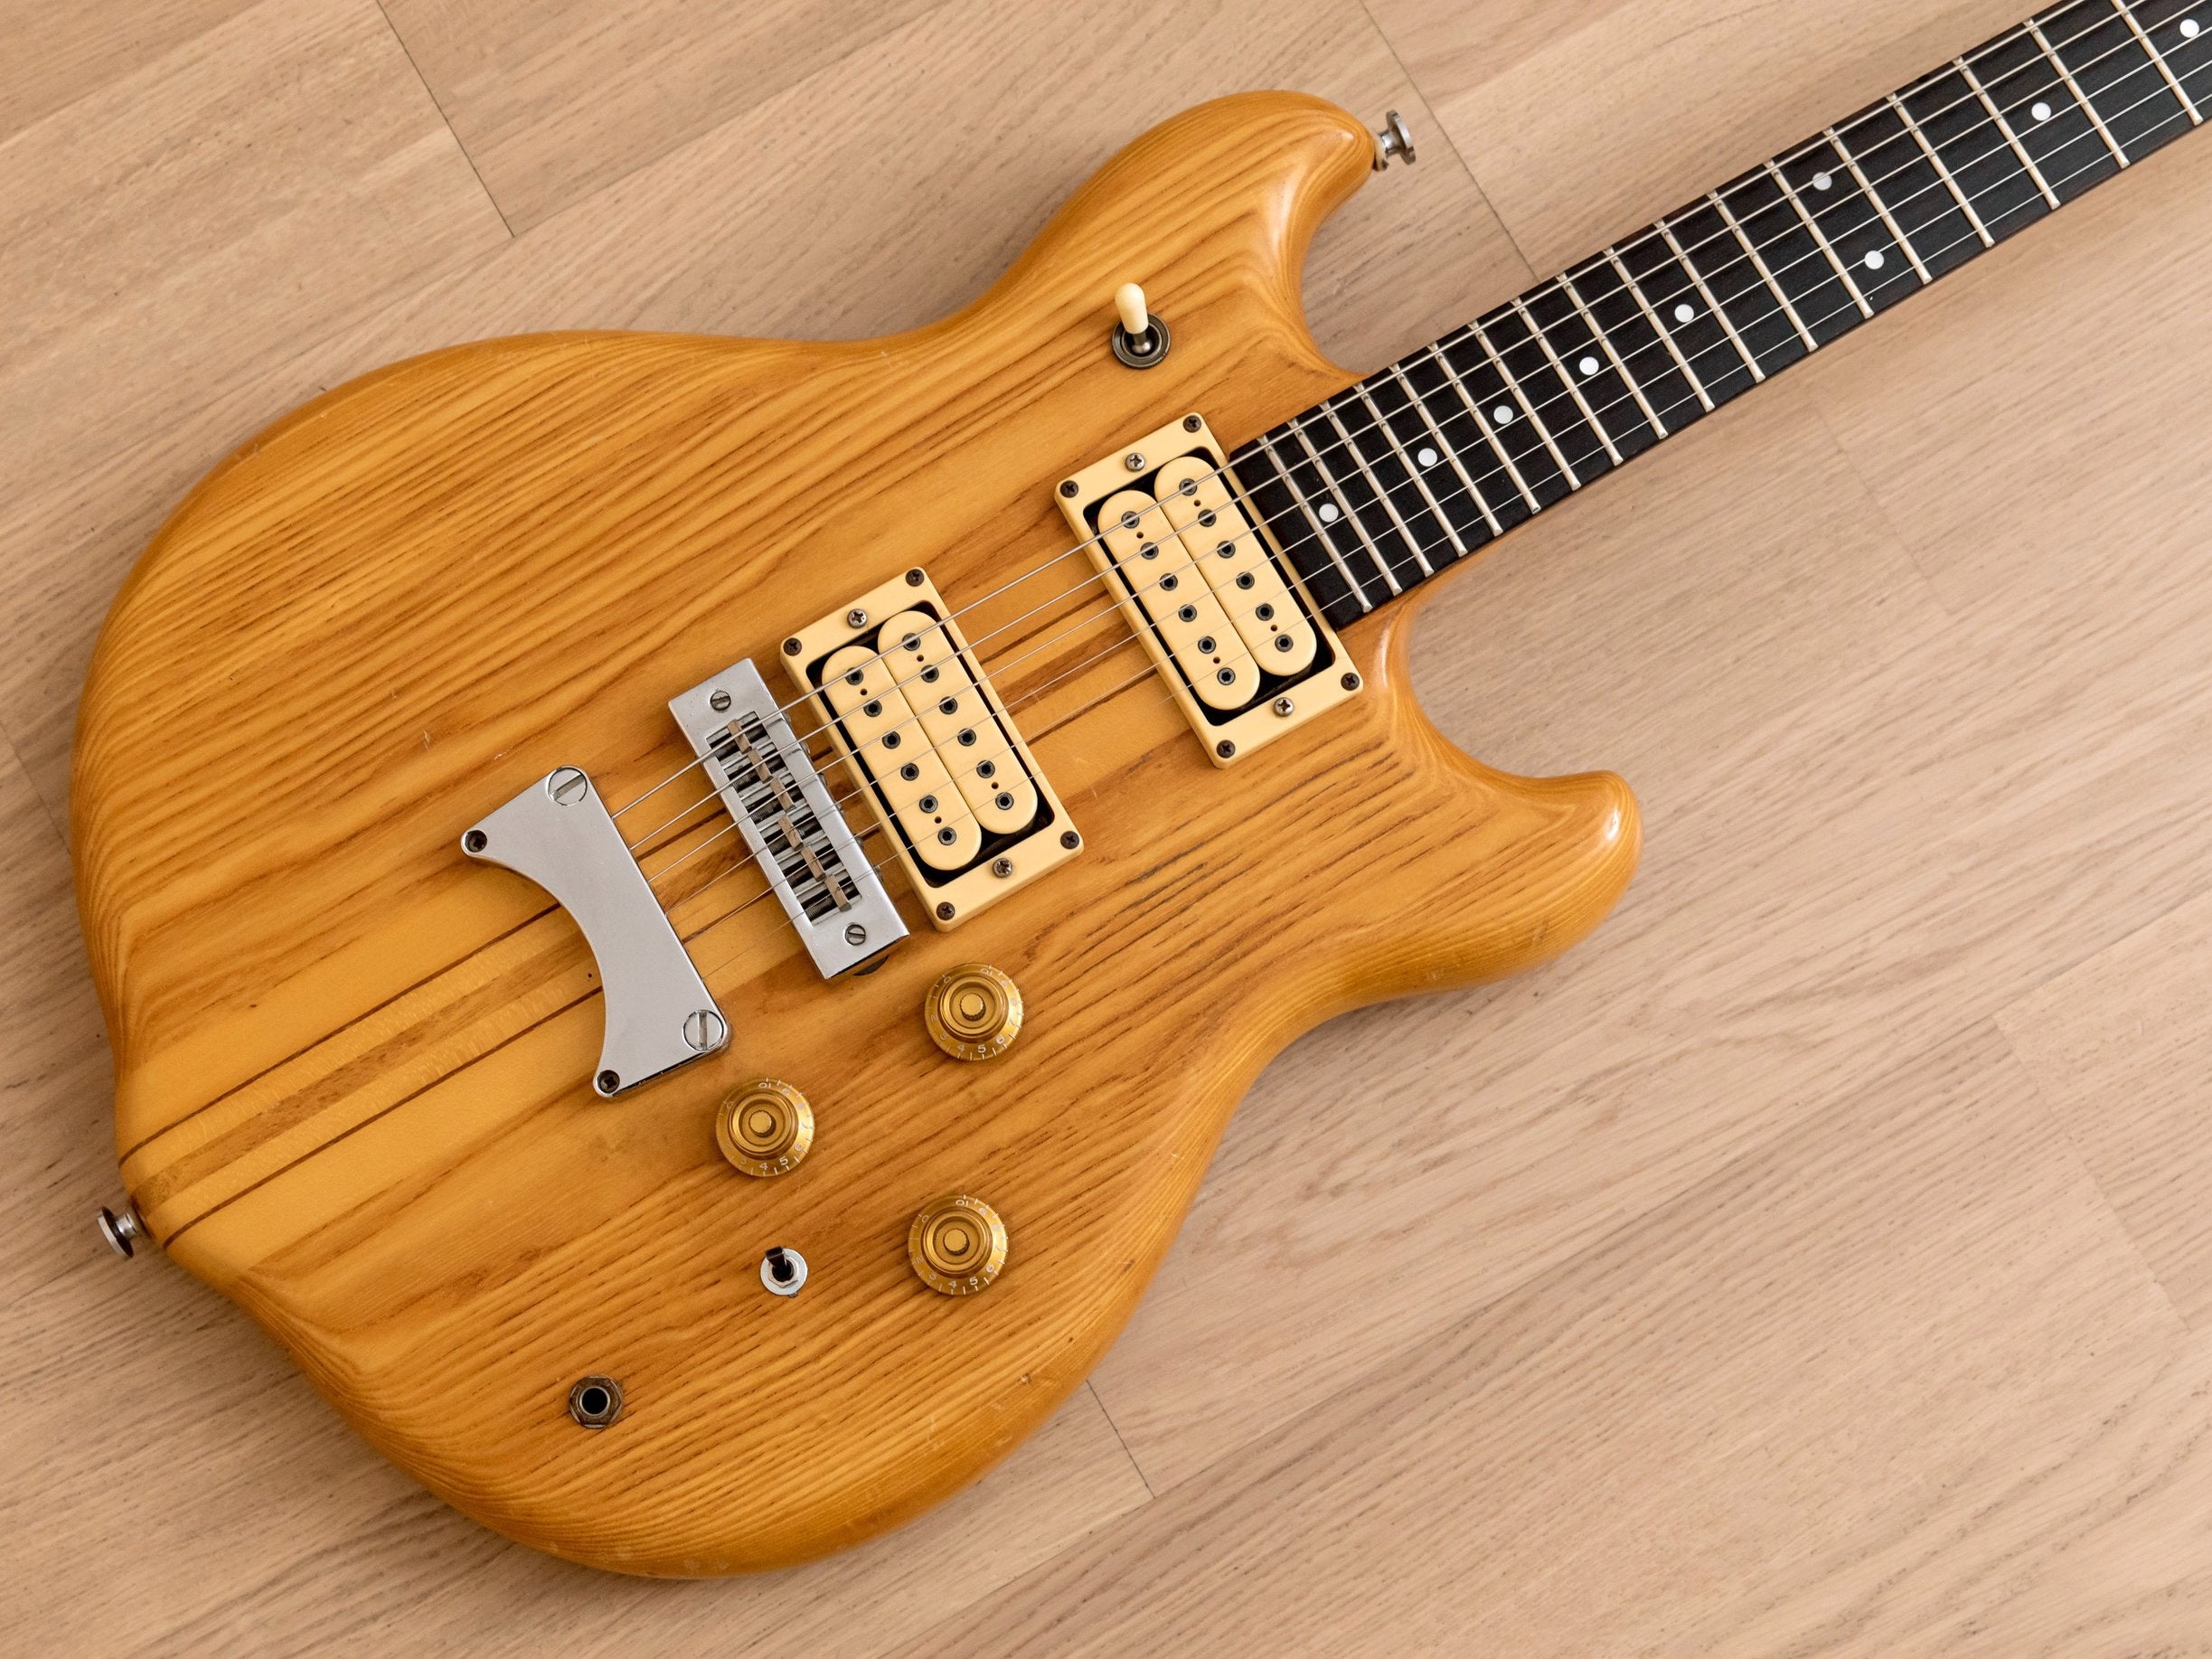 1979 Kasuga Scorpion SC-900 Vintage Neck Through Electric Guitar, 100% Original, Japan